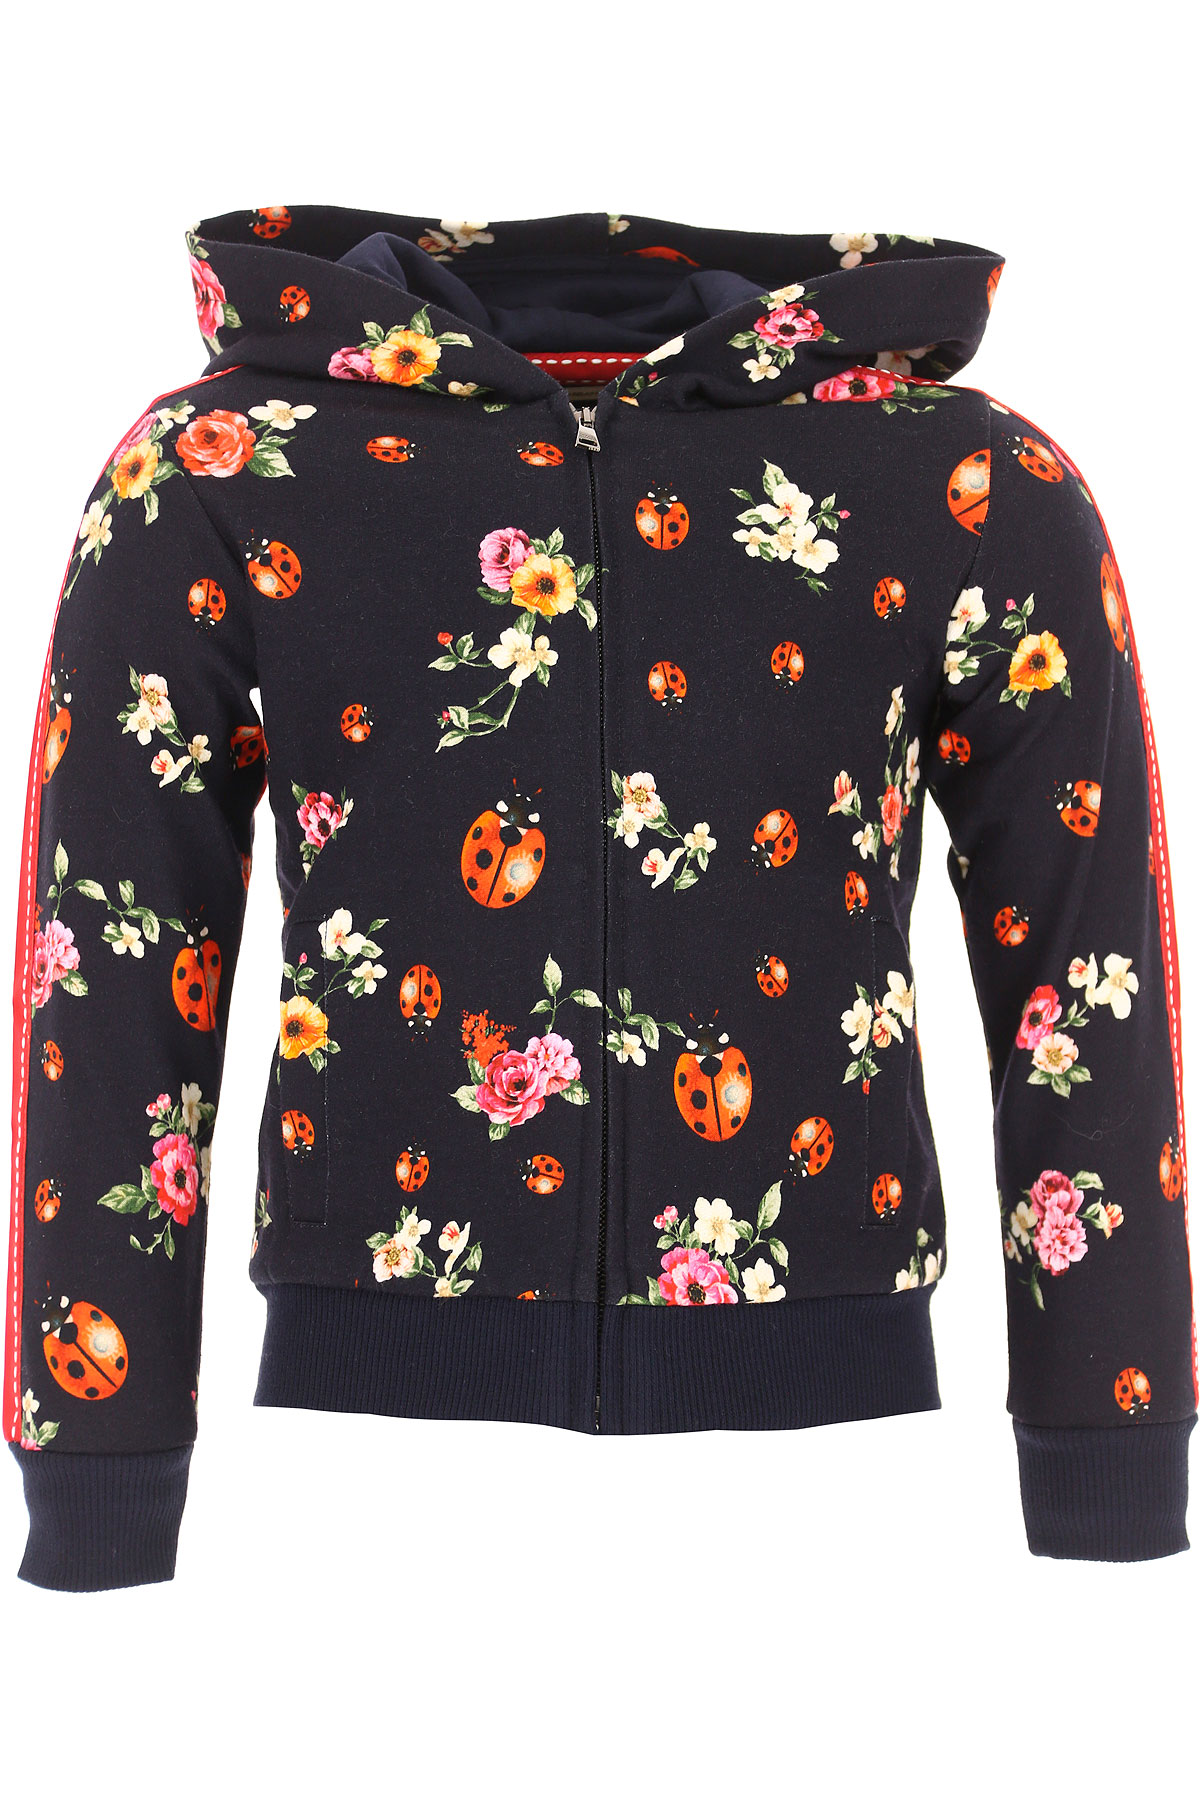 Dolce & Gabbana Kinder Sweatshirt & Kapuzenpullover für Mädchen Günstig im Outlet Sale, Schwarz, Baumwolle, 2017, 2Y 3Y 4Y 6Y